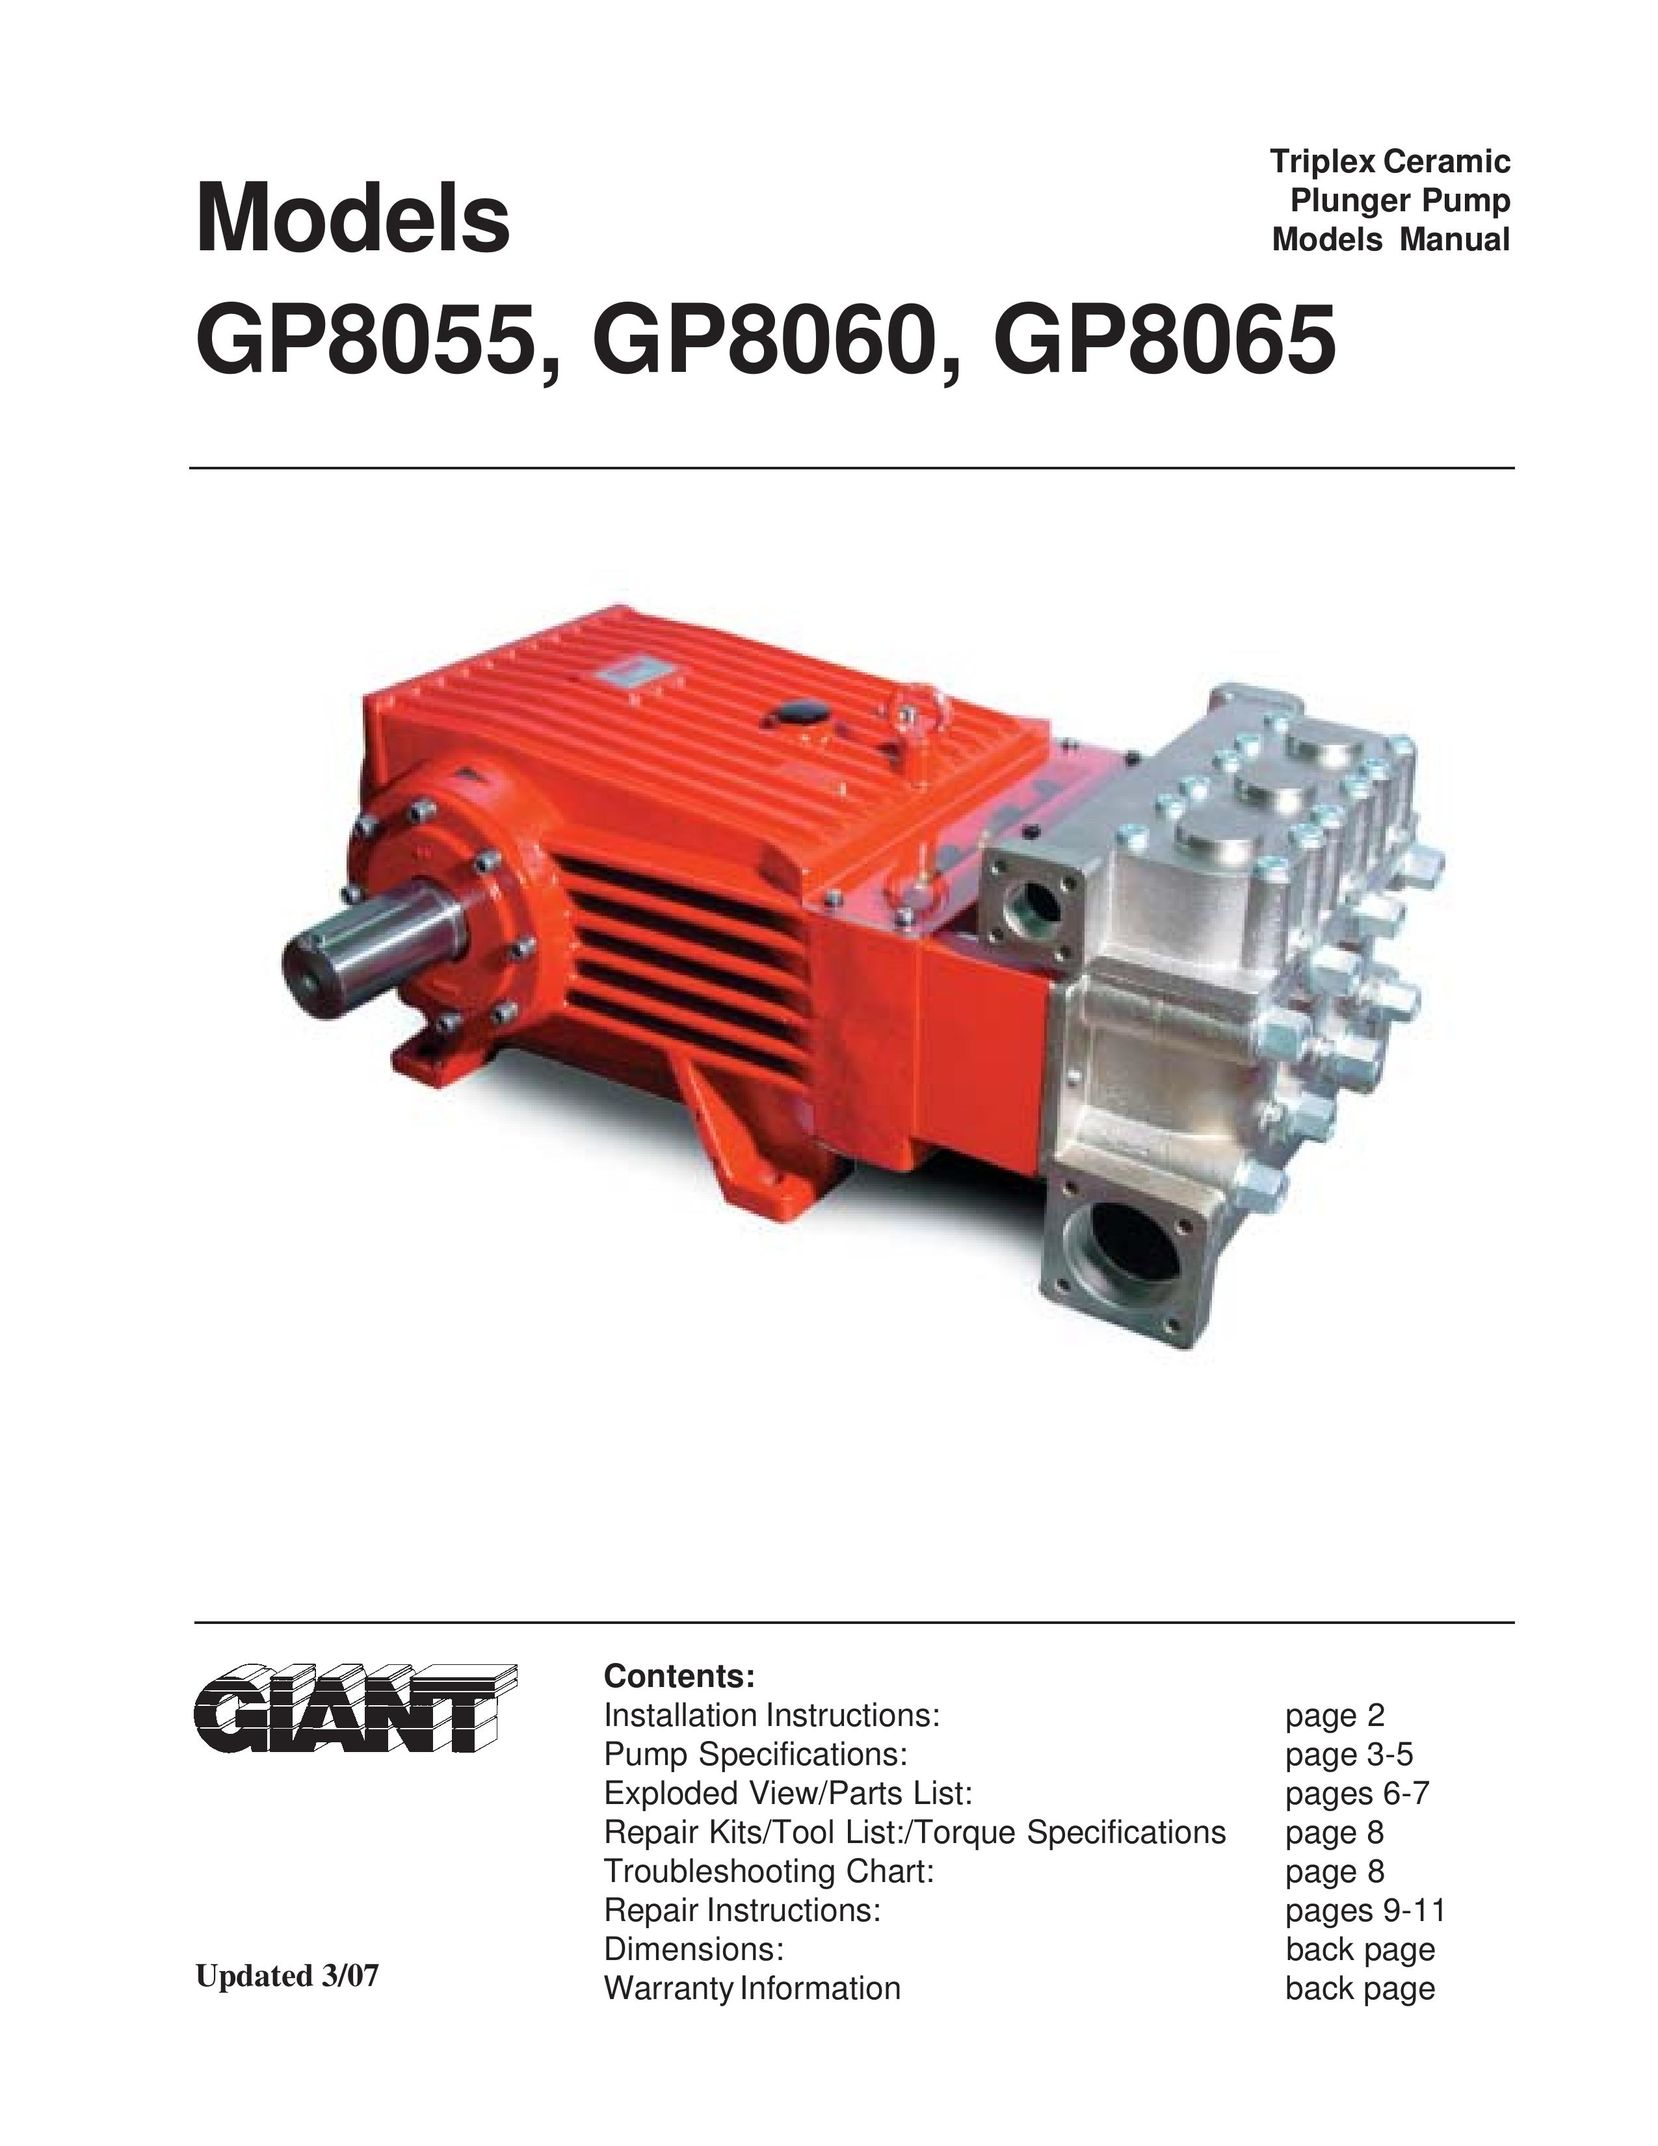 Giant GP8060 Water Pump User Manual